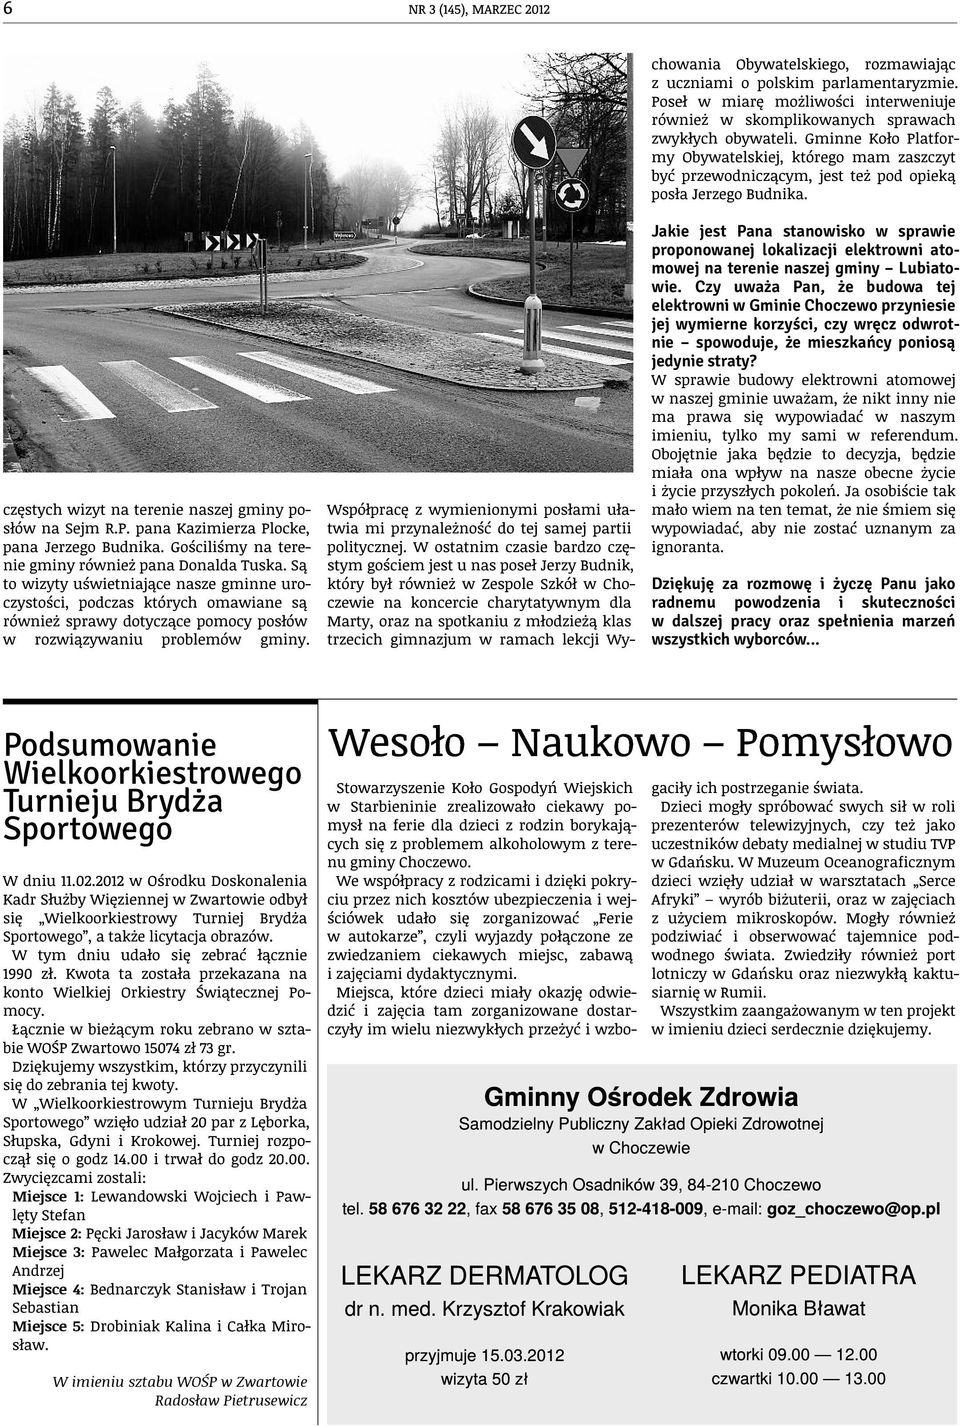 Jakie jest Pana stanowisko w sprawie proponowanej lokalizacji elektrowni atomowej na terenie naszej gminy Lubiatowie.